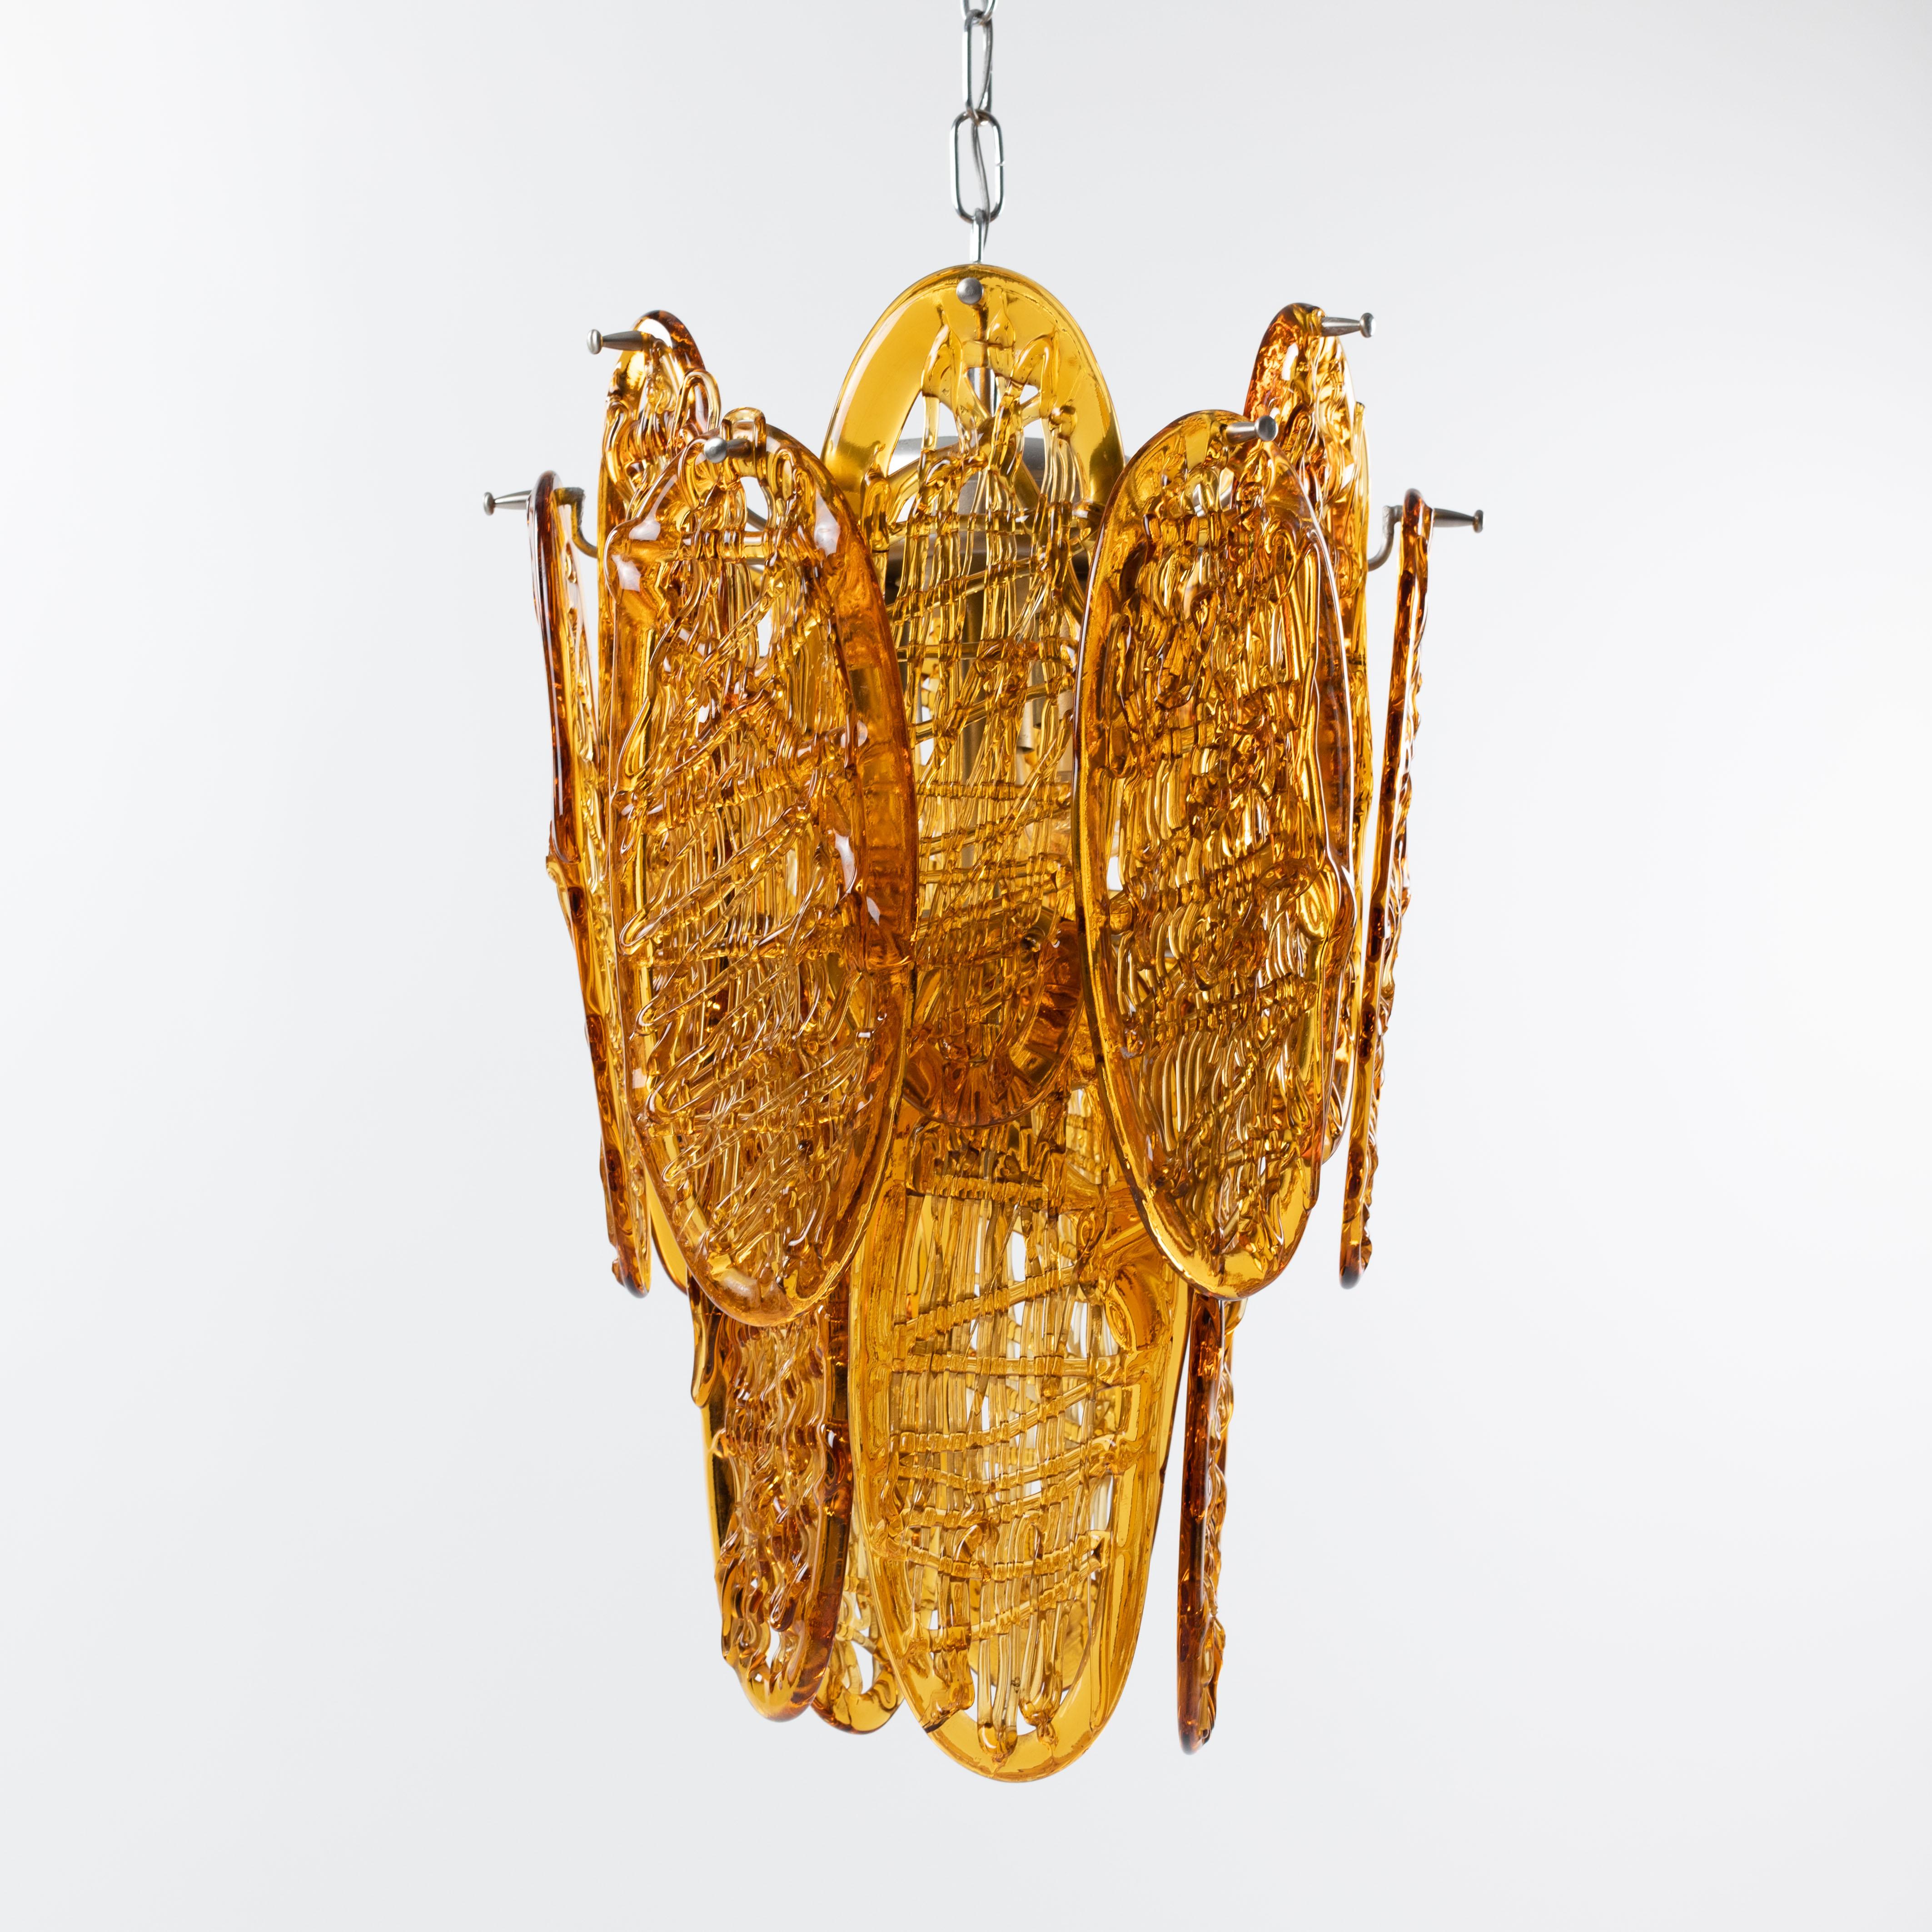 Italienischer Kronleuchter aus der Mitte des Jahrhunderts, hergestellt von der Firma AV MAZZEGA in den 1960er Jahren.

17 cognacfarbene, ovale Muranoglasmedaillons mit einer Größe von 32x12cm bilden die konische Lampe.
Die Glasmedaillons sind